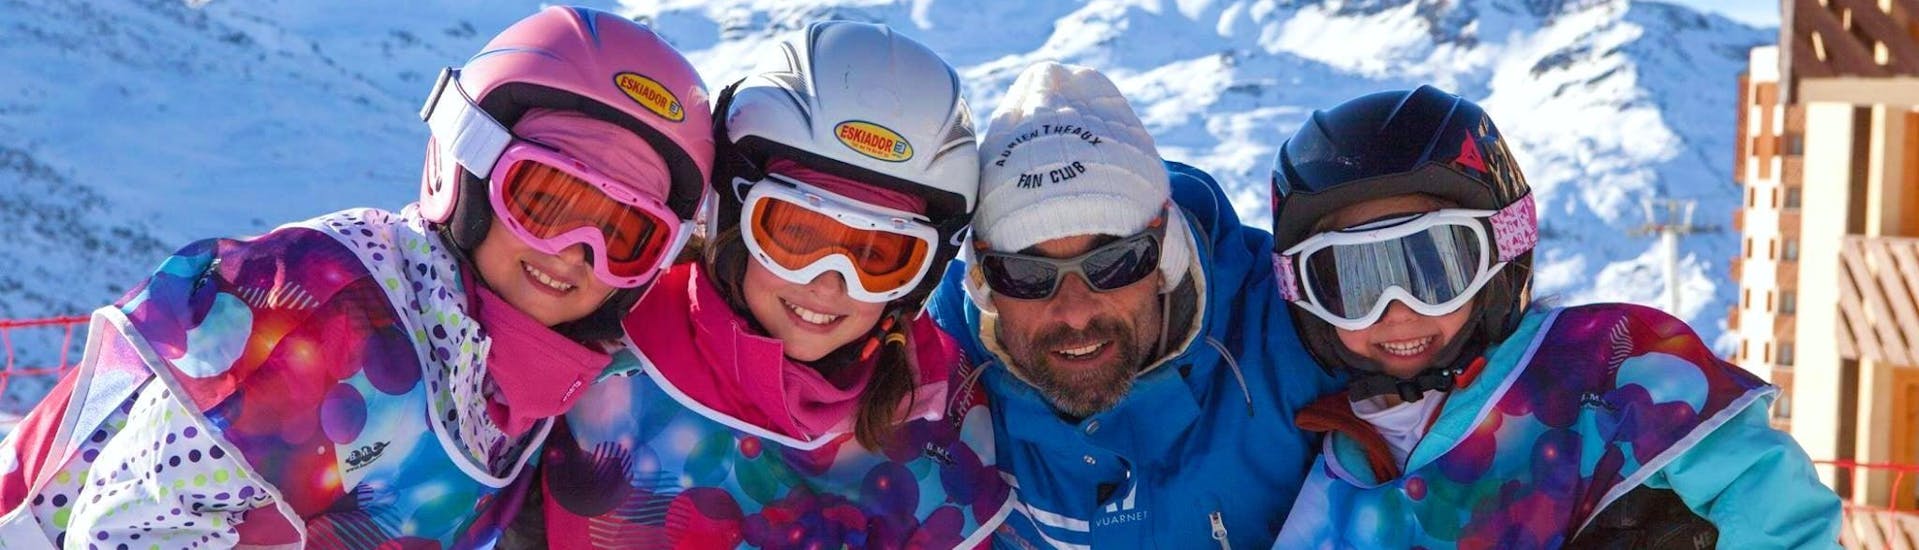 Lezioni di sci per bambini a partire da 5 anni.